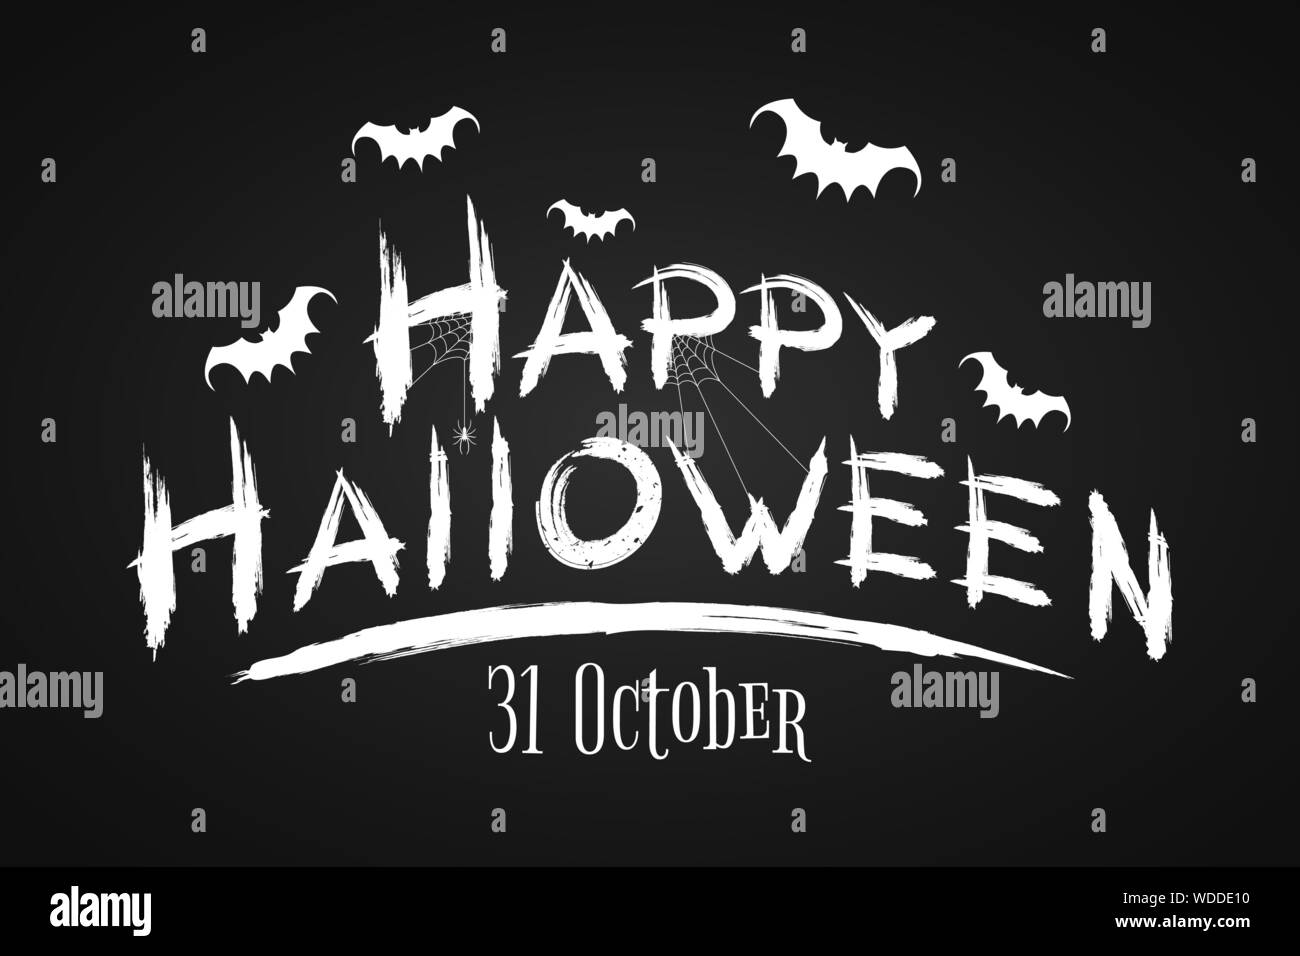 Festliche text Banner für Happy Halloween. Schrecklich grunge Kalligraphie mit Fledermäuse und Spinnen auf einem dunklen Hintergrund. Vector Illustration Stock Vektor